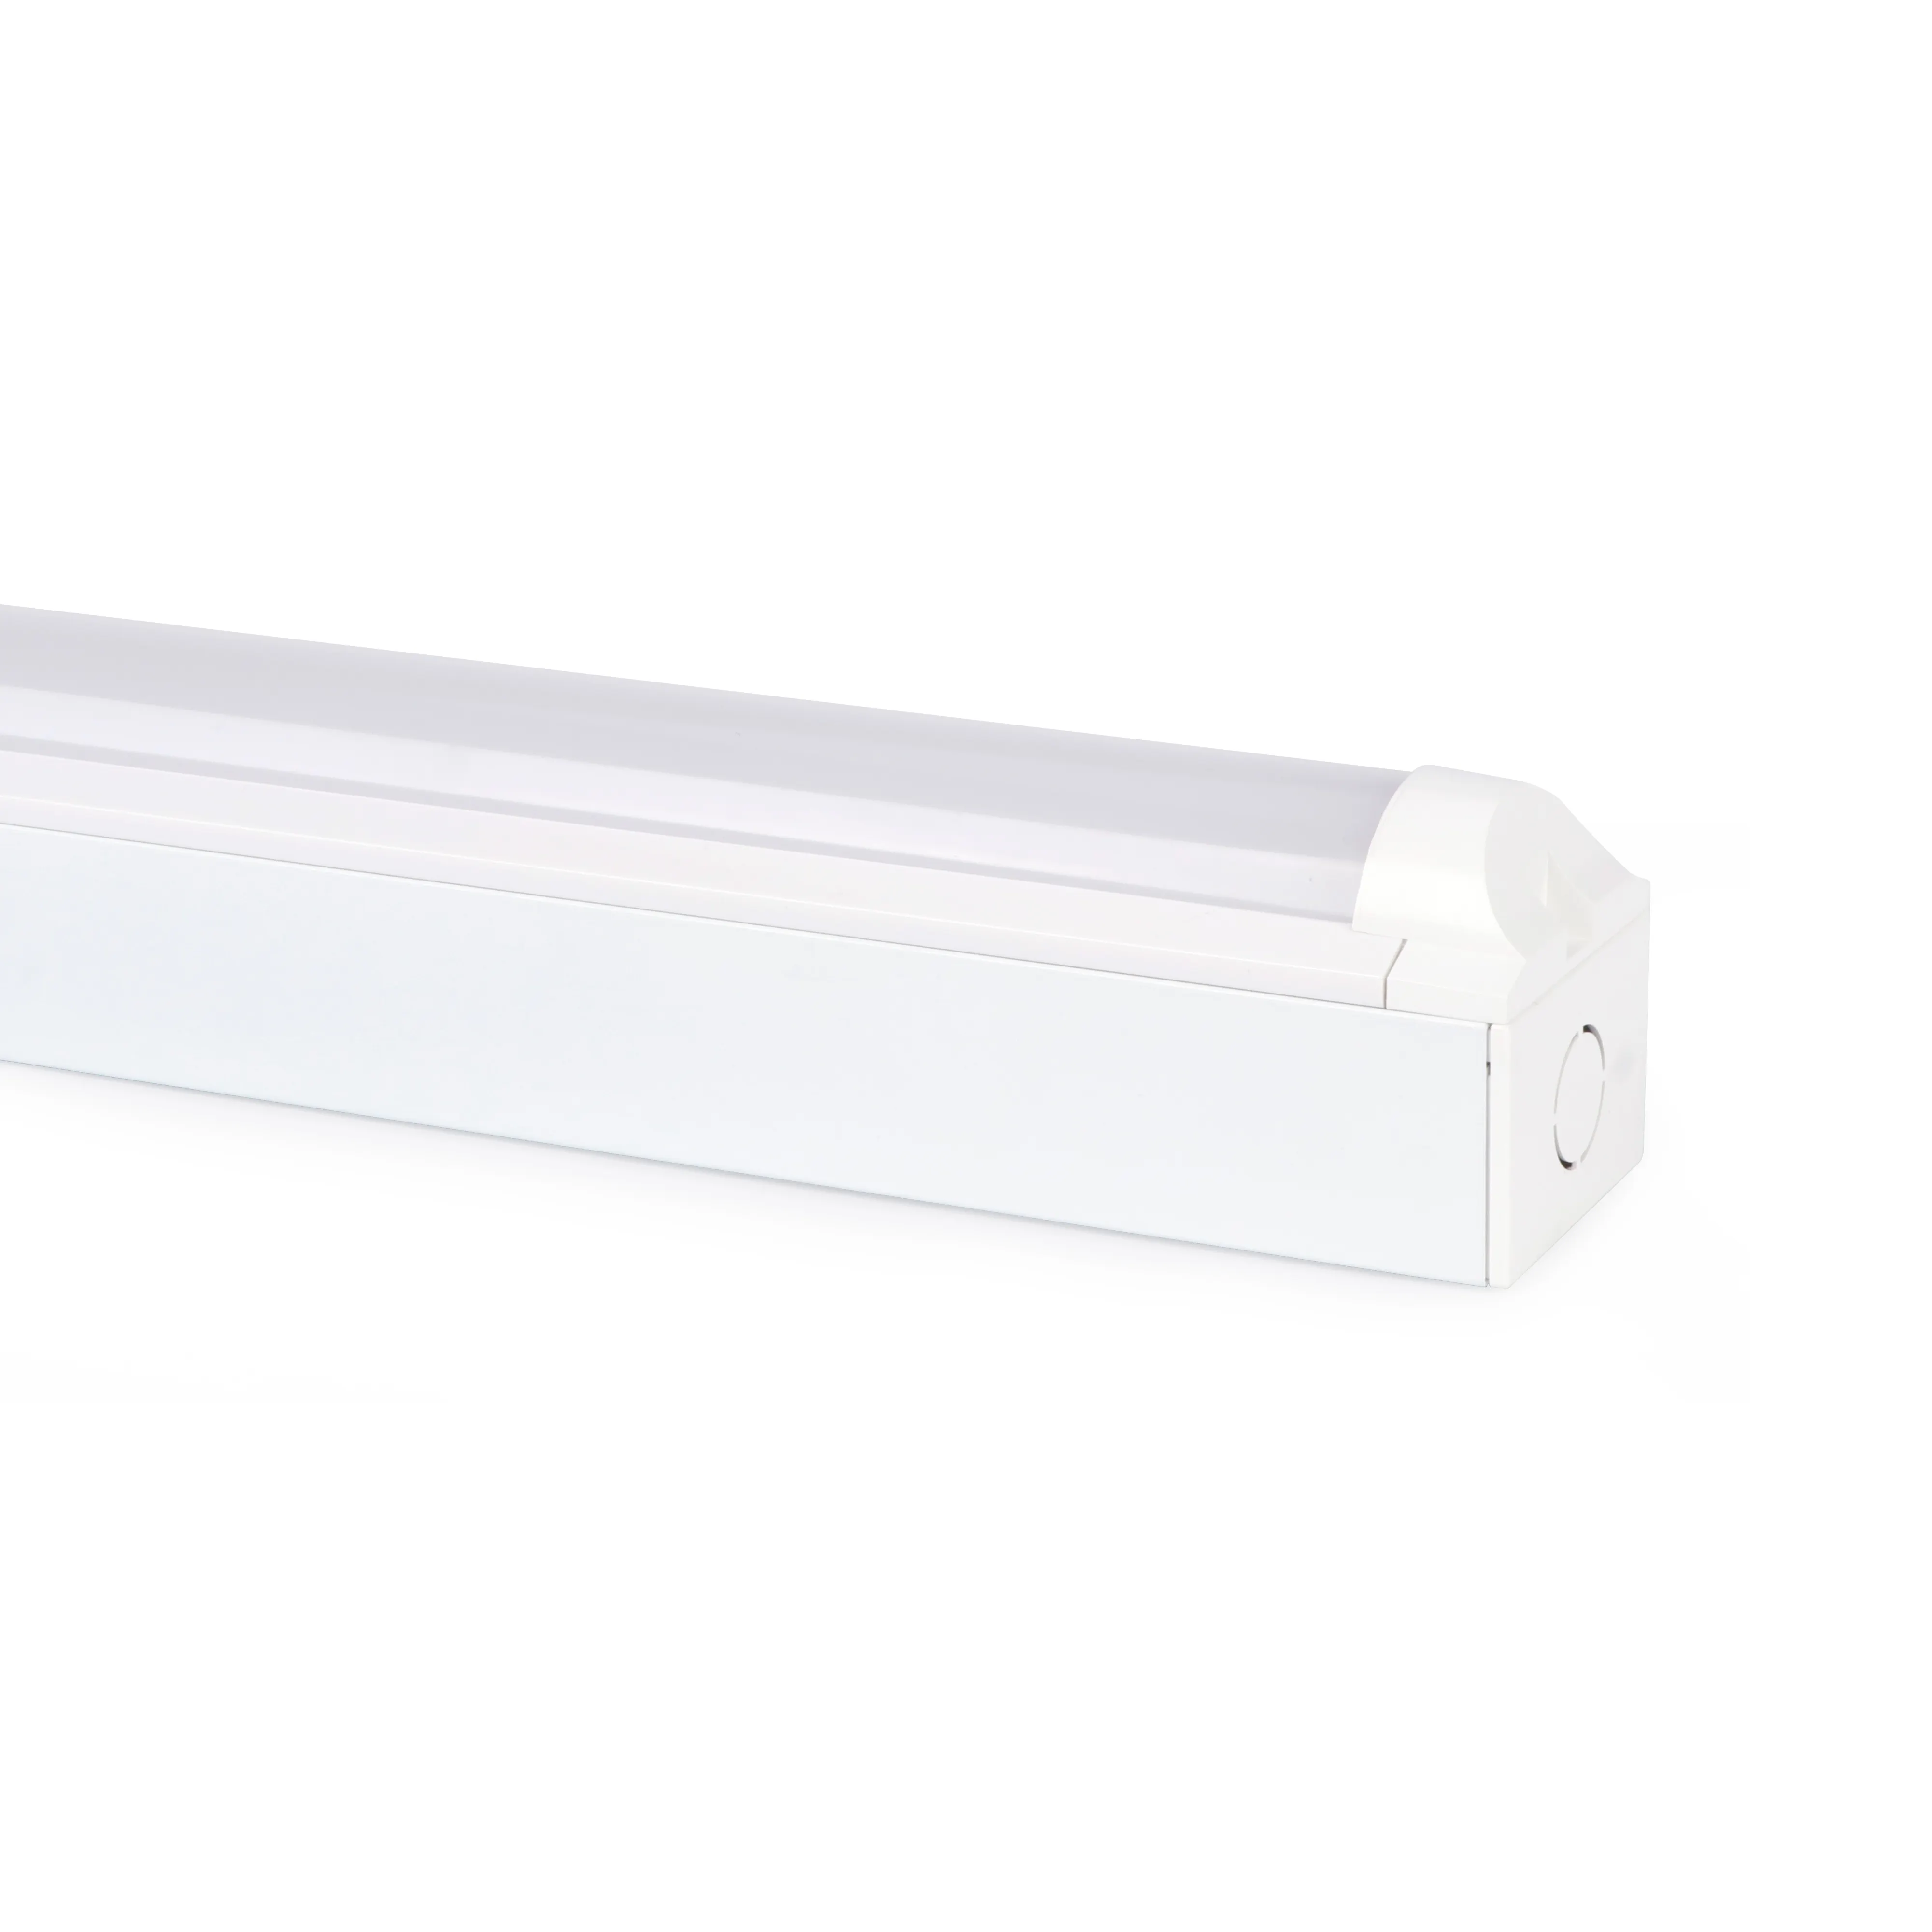 Alta lumen di alta qualità consegna rapida flessibile tubo led dimmerabile luce sfarfallio libero T8 LED tubo di vetro personalizzato